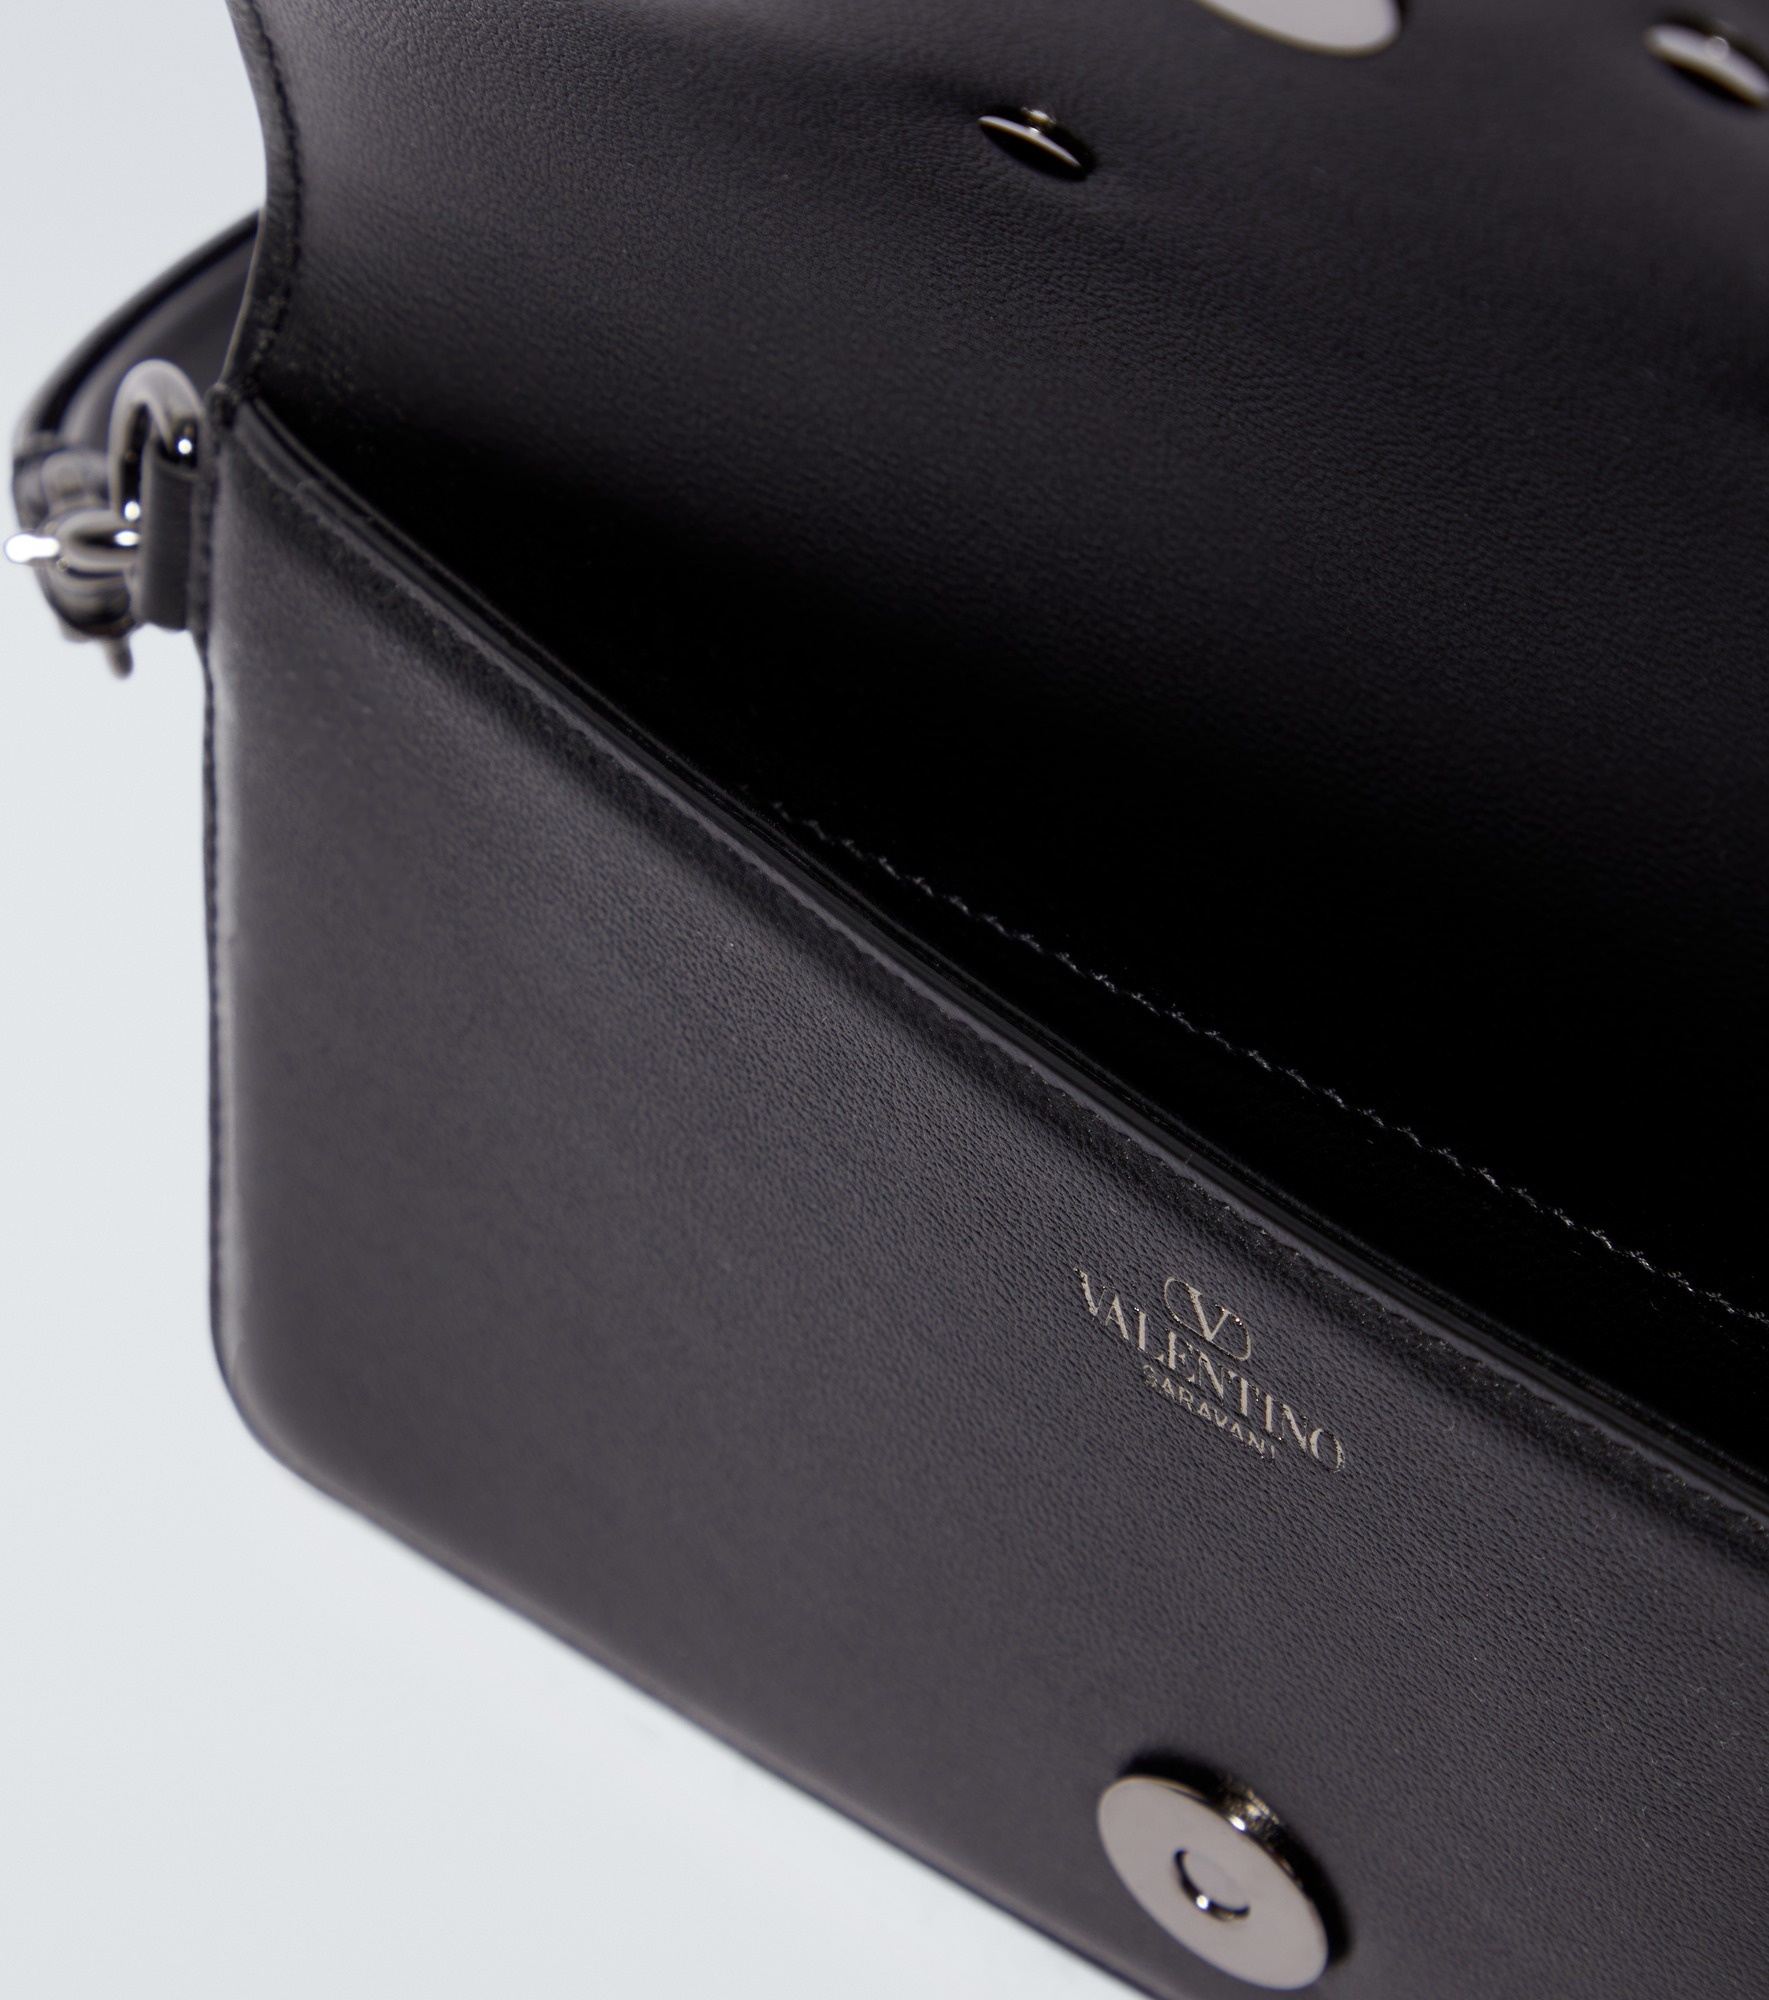 VLogo leather phone case - 2